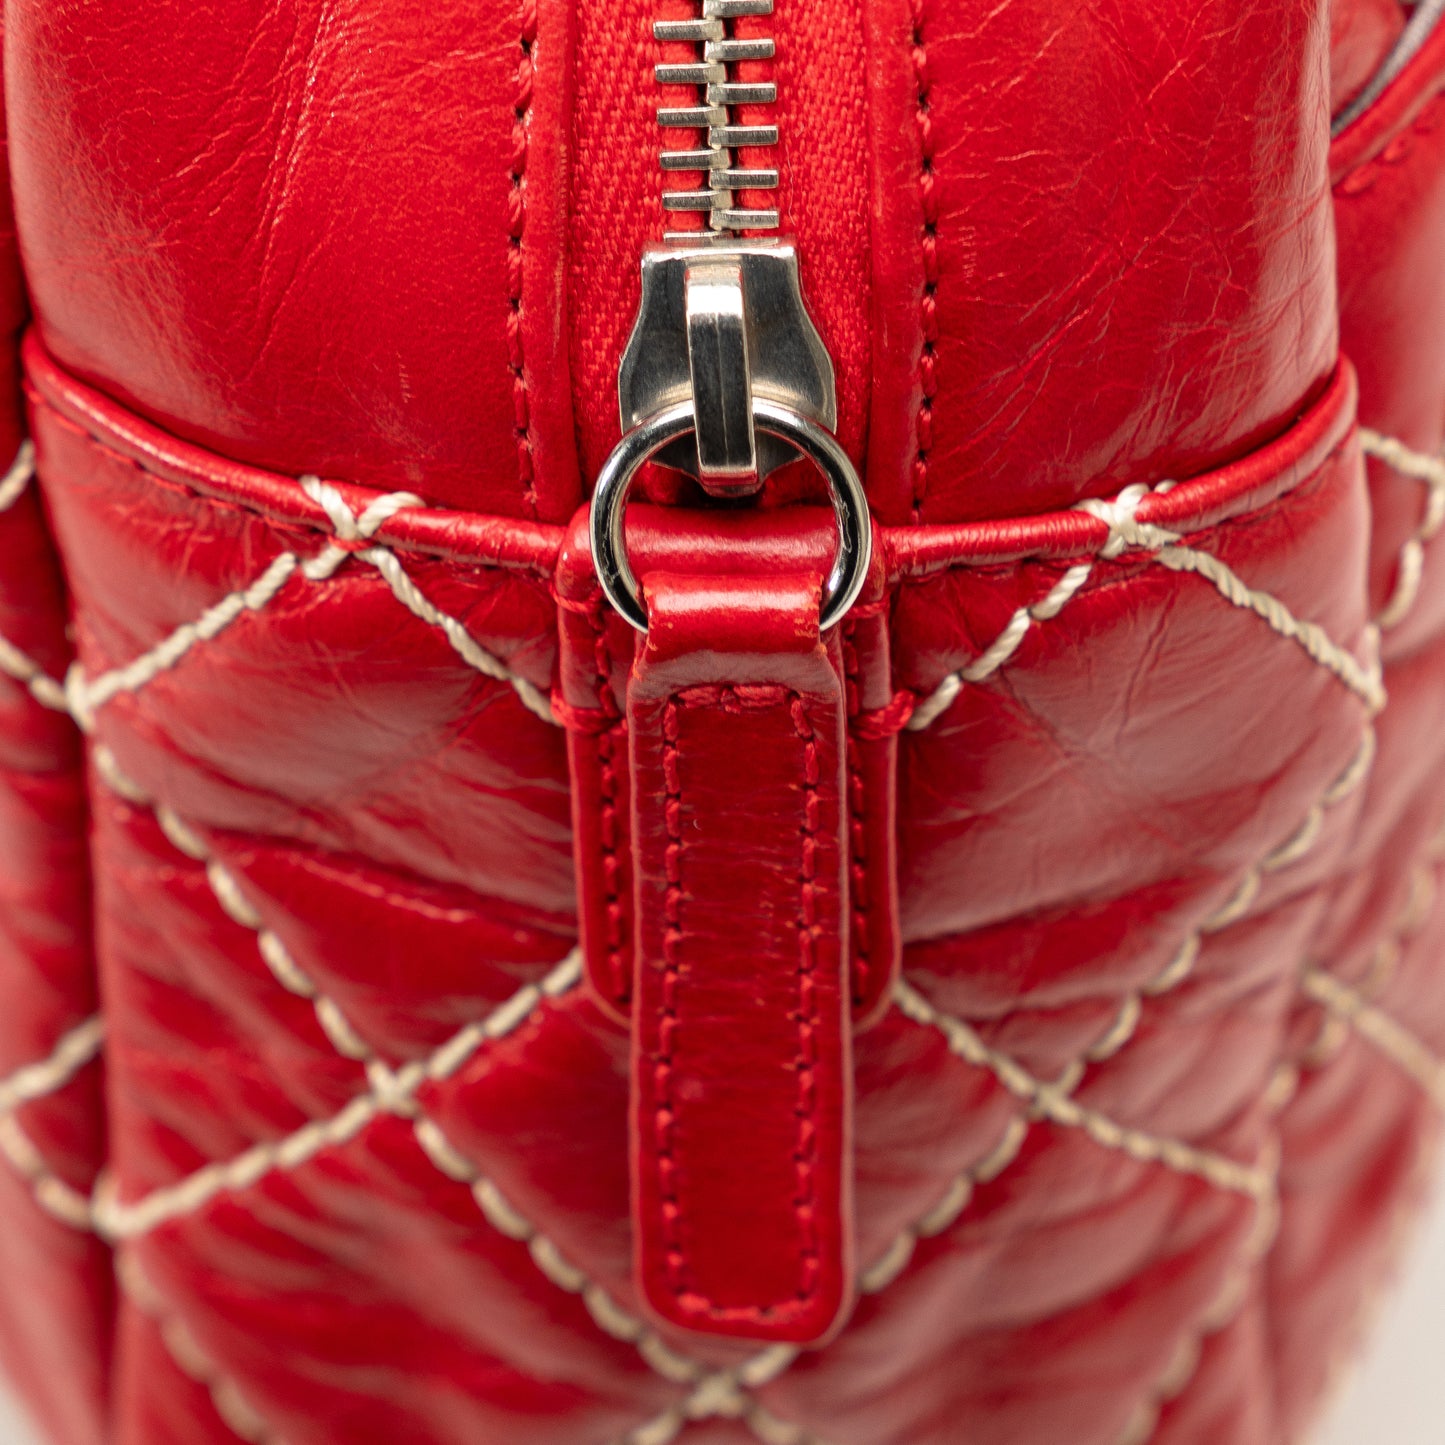 Medium Quilted Reissue Camera Bag Red - Gaby Paris